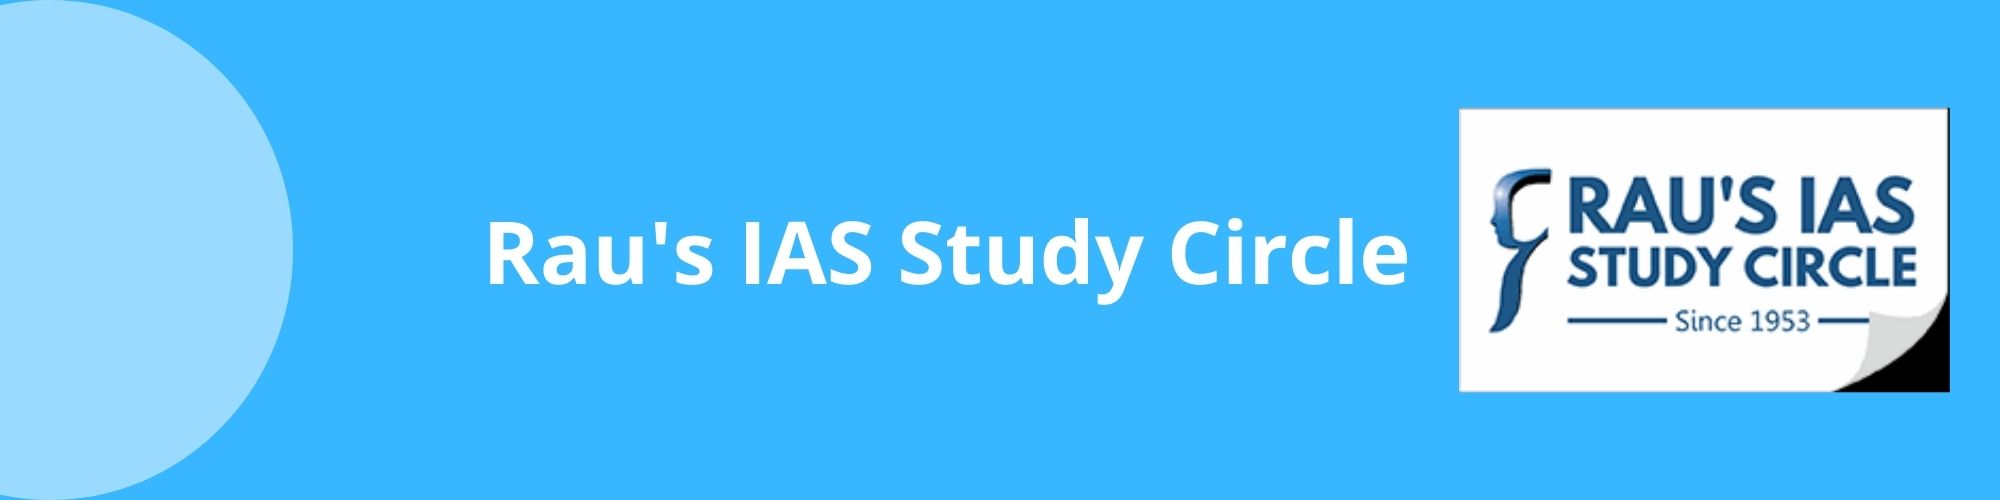 Rau's IAS Study Circle 